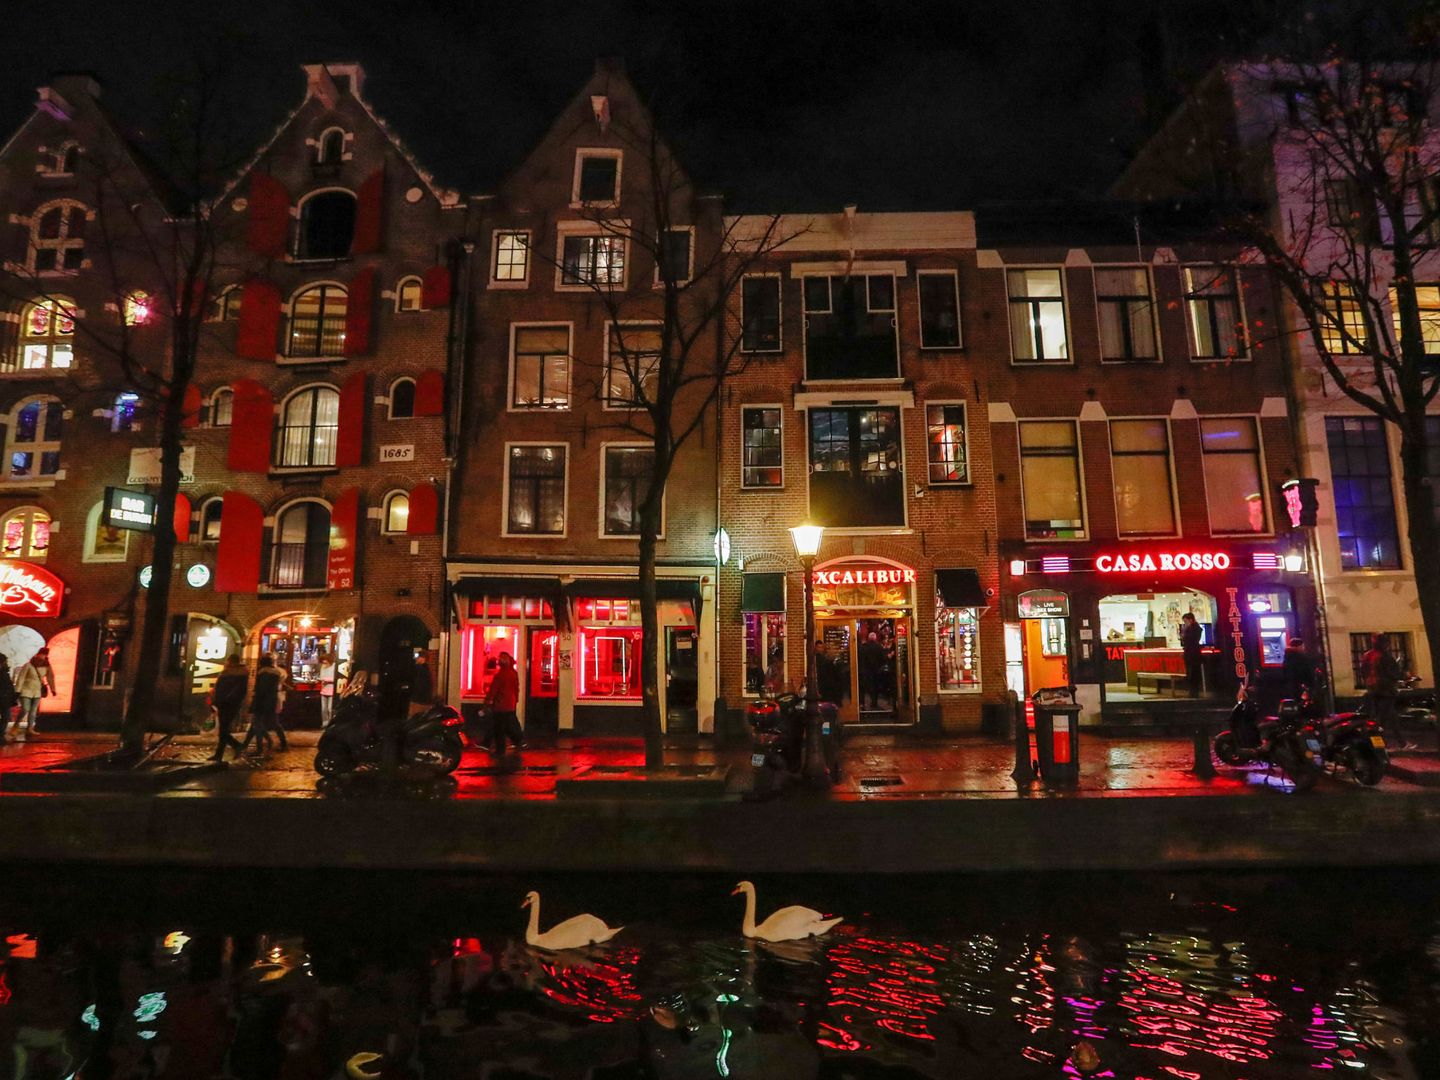 Distrito rojo de Amsterdam, el epicentro de la prostitución visible en el país, donde abunda también la trata de blancas. (Reuters)